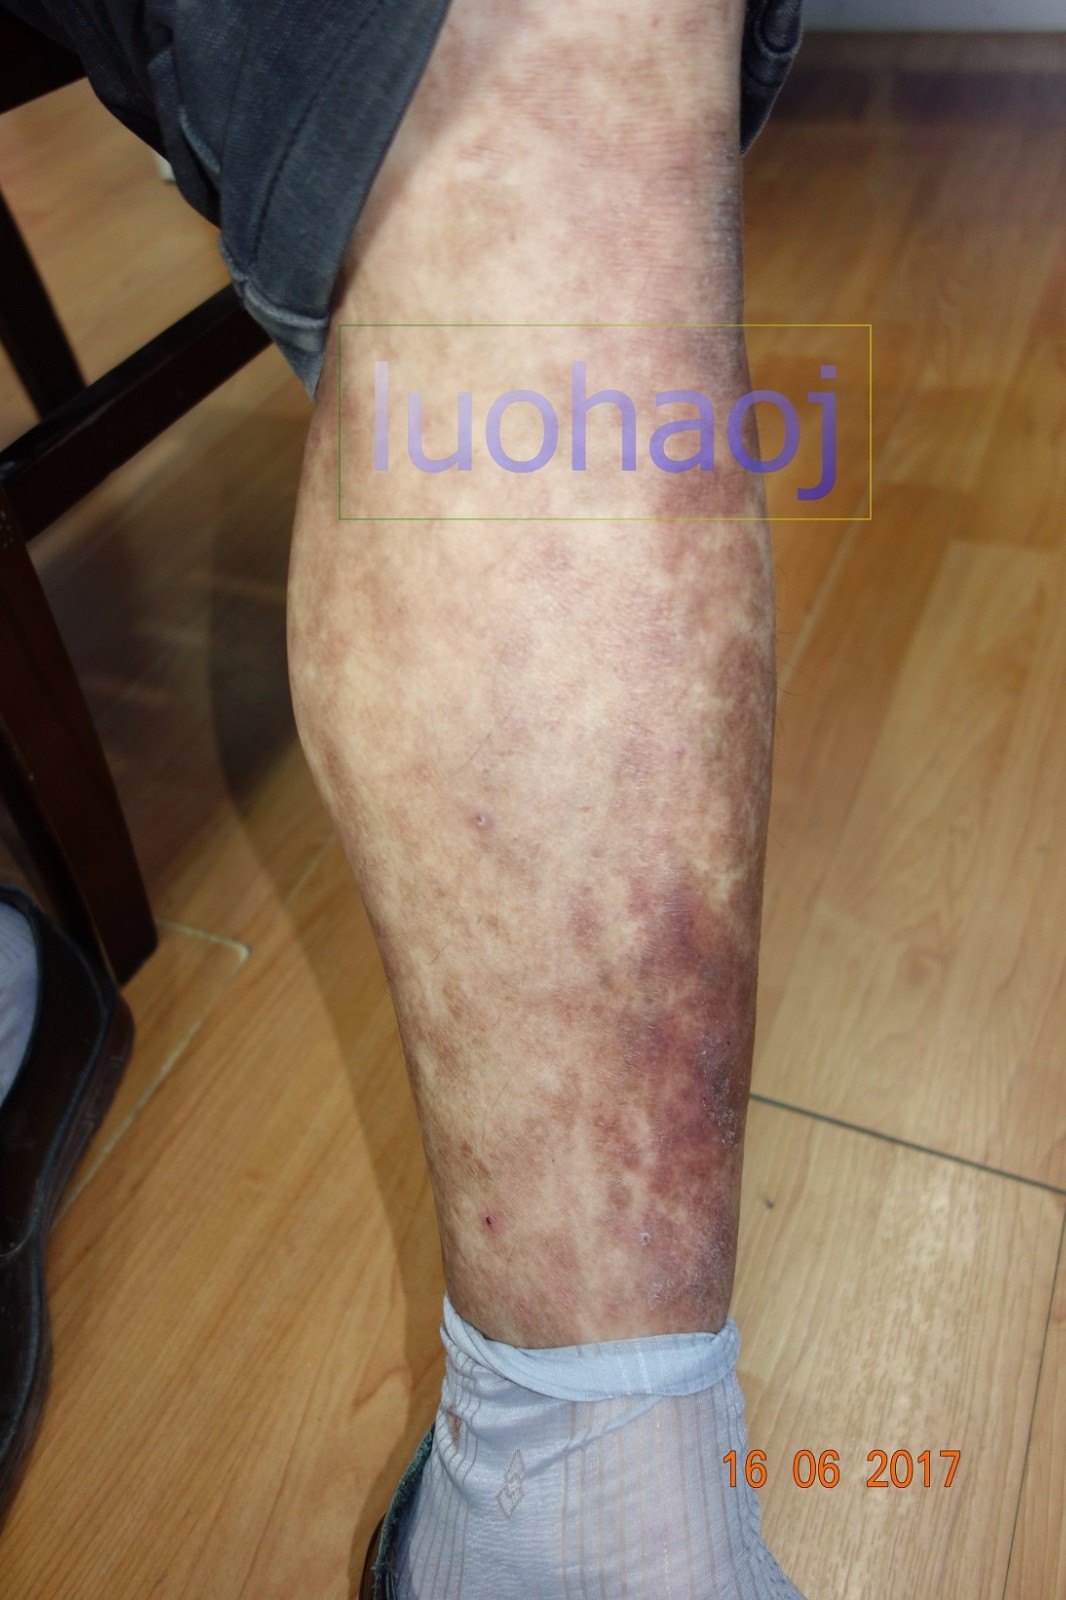 严重的双下肢小腿对称性色素紫癜样皮炎中西结合治疗医案 